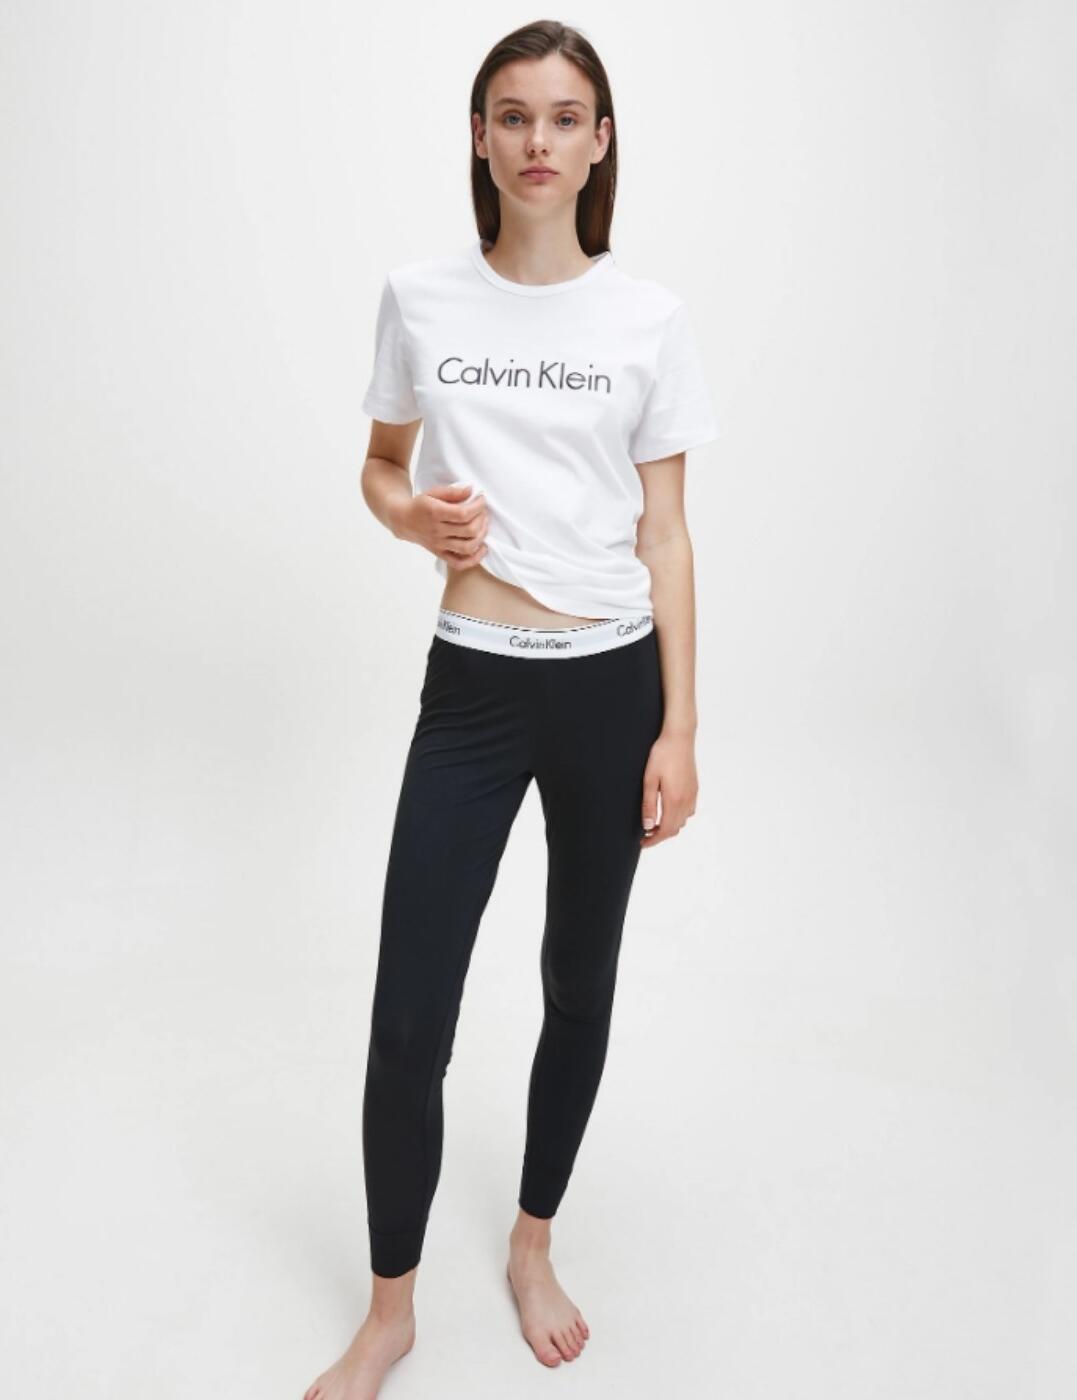 Calvin Klein Modern Cotton Legging Pant - Belle Lingerie